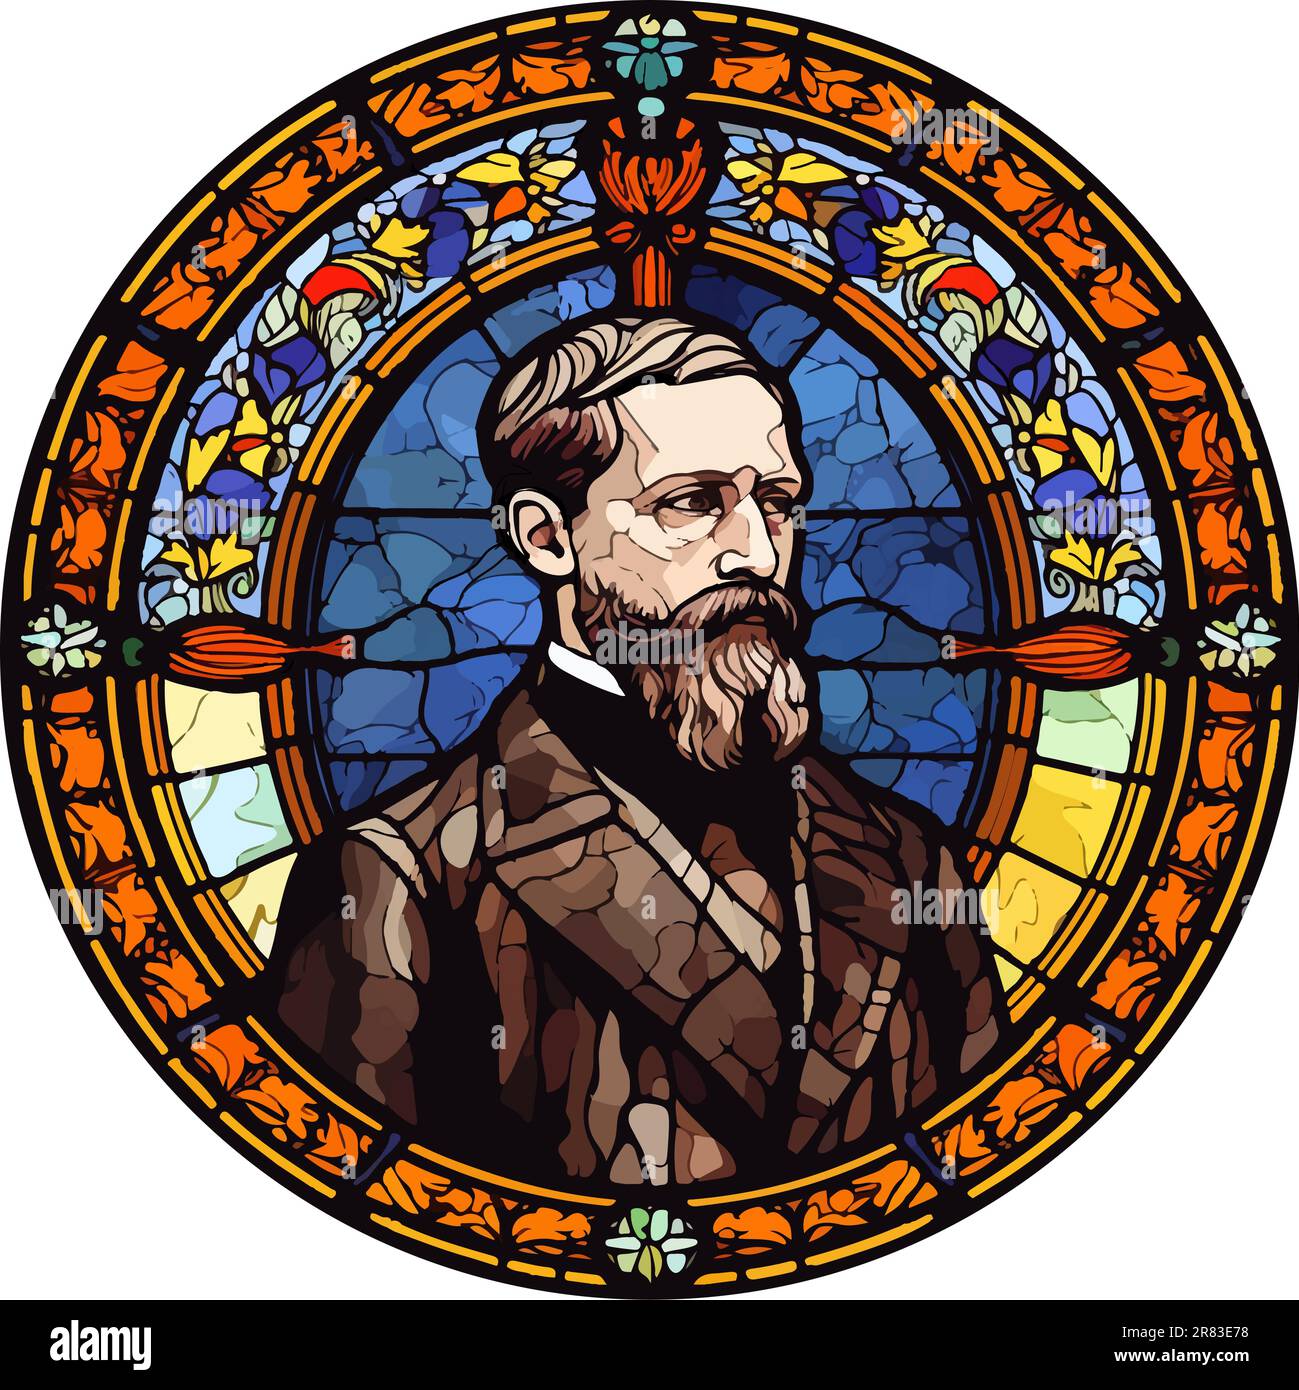 Buntglasfenster-Vektor von Alfred Nobel (1833-1896), einem schwedischen Chemiker, Ingenieur, Erfinder, Geschäftsmann, Und Philanthrop. Stock Vektor